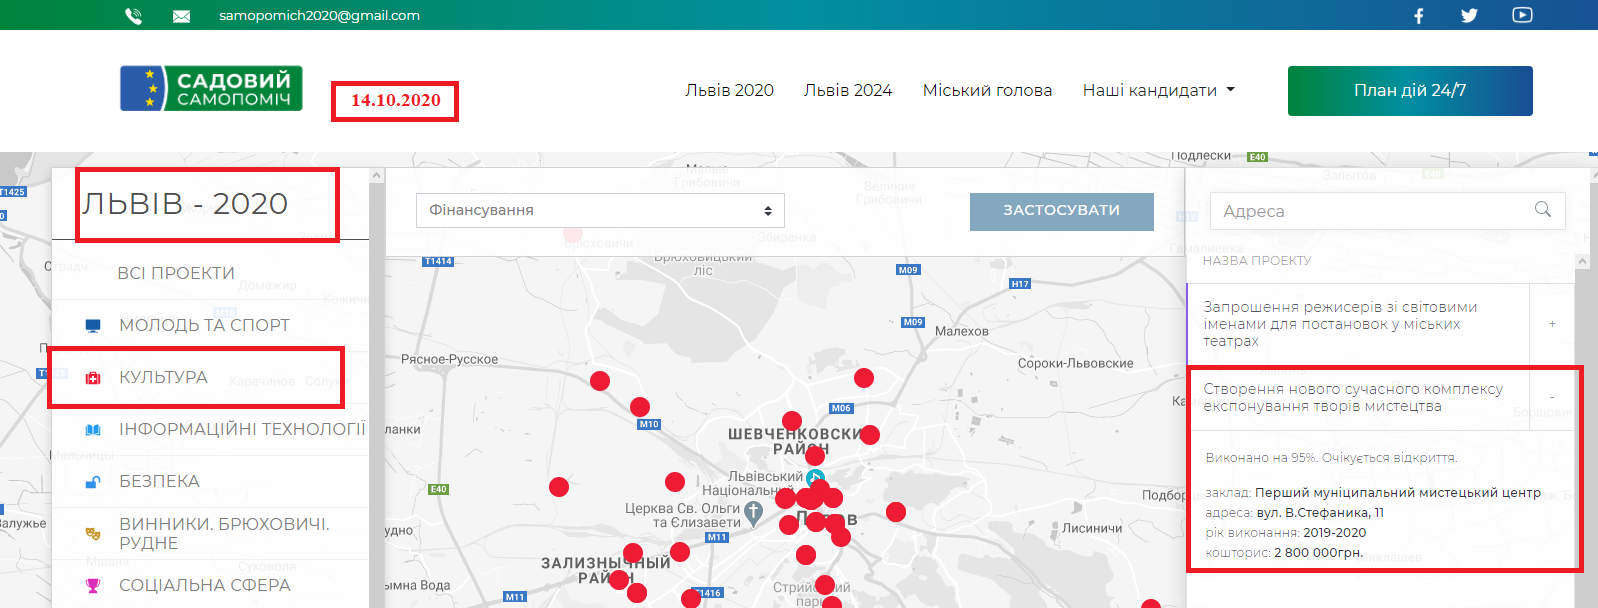 https://lviv2020.com.ua/map/2020/2